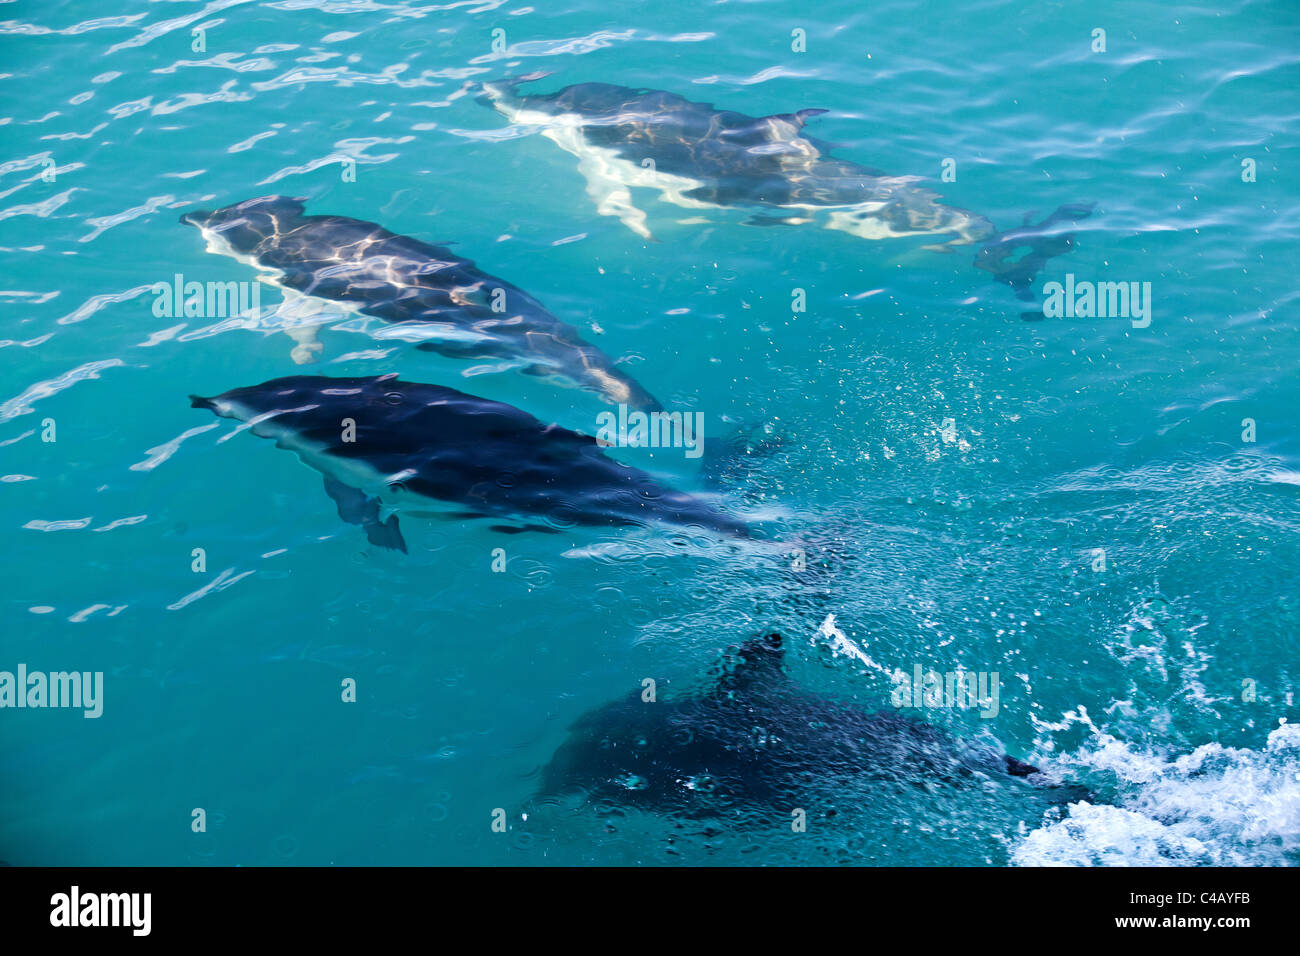 Dusky i delfini nuotare sotto la superficie dell'acqua in Kaikoura, Nuova Zelanda Foto Stock